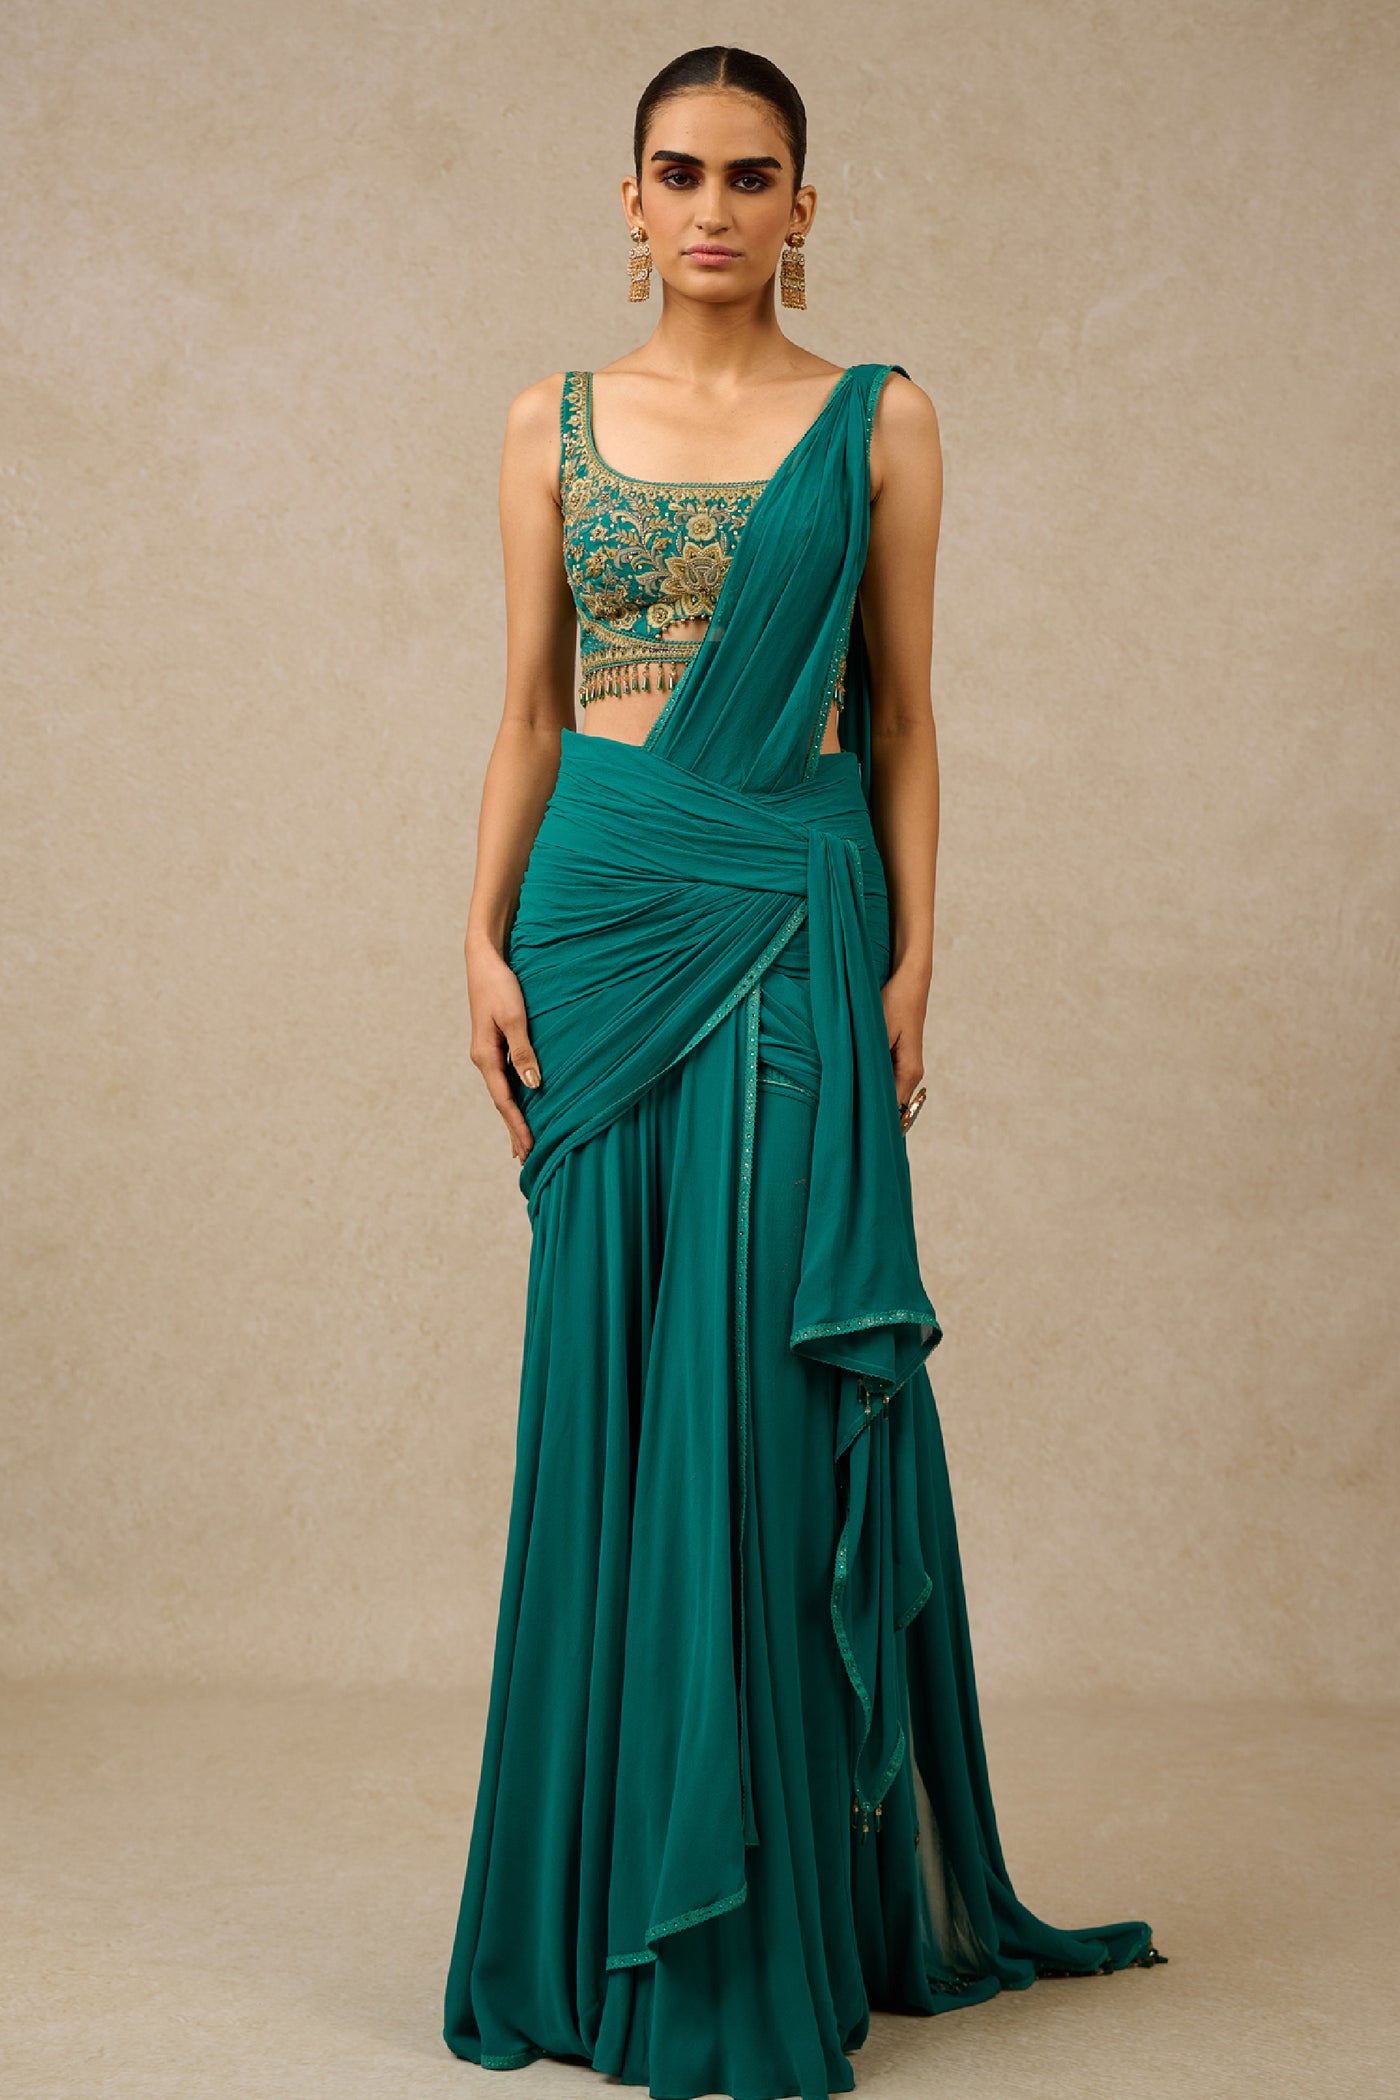 Tarun Tahiliani Concept Saree Blouse Teal Indian designer wear online shopping melange singapore